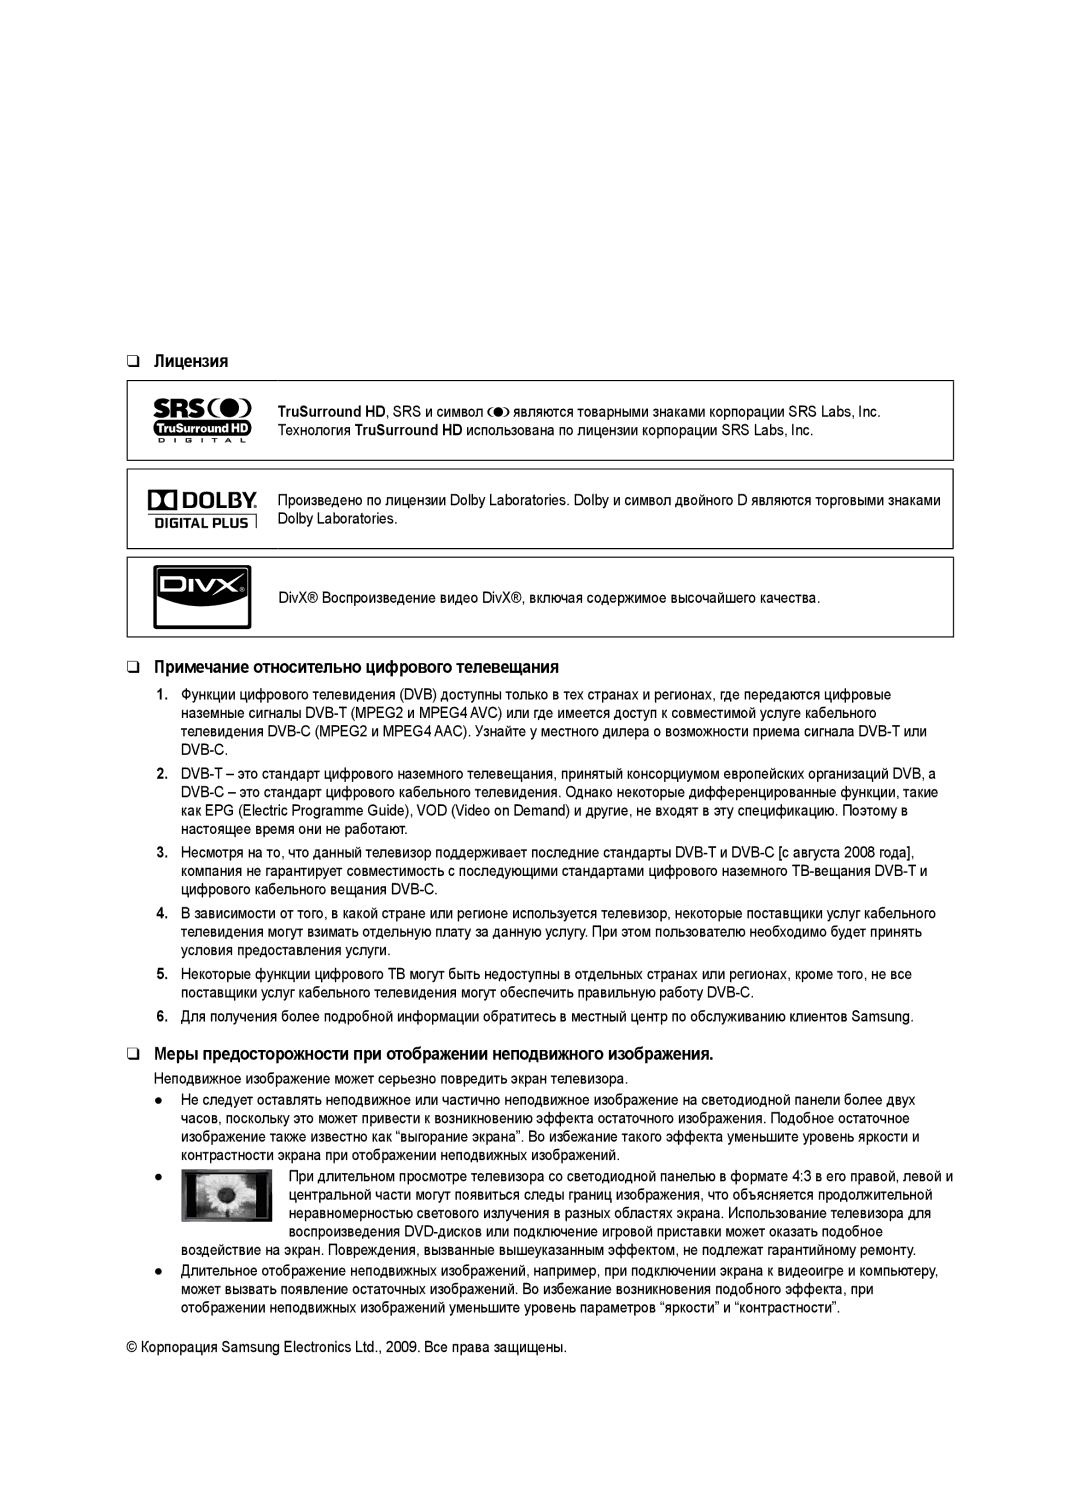 Samsung UE40B7020WWXXC manual Лицензия, Примечание относительно цифрового телевещания, Настоящее время они не работают 